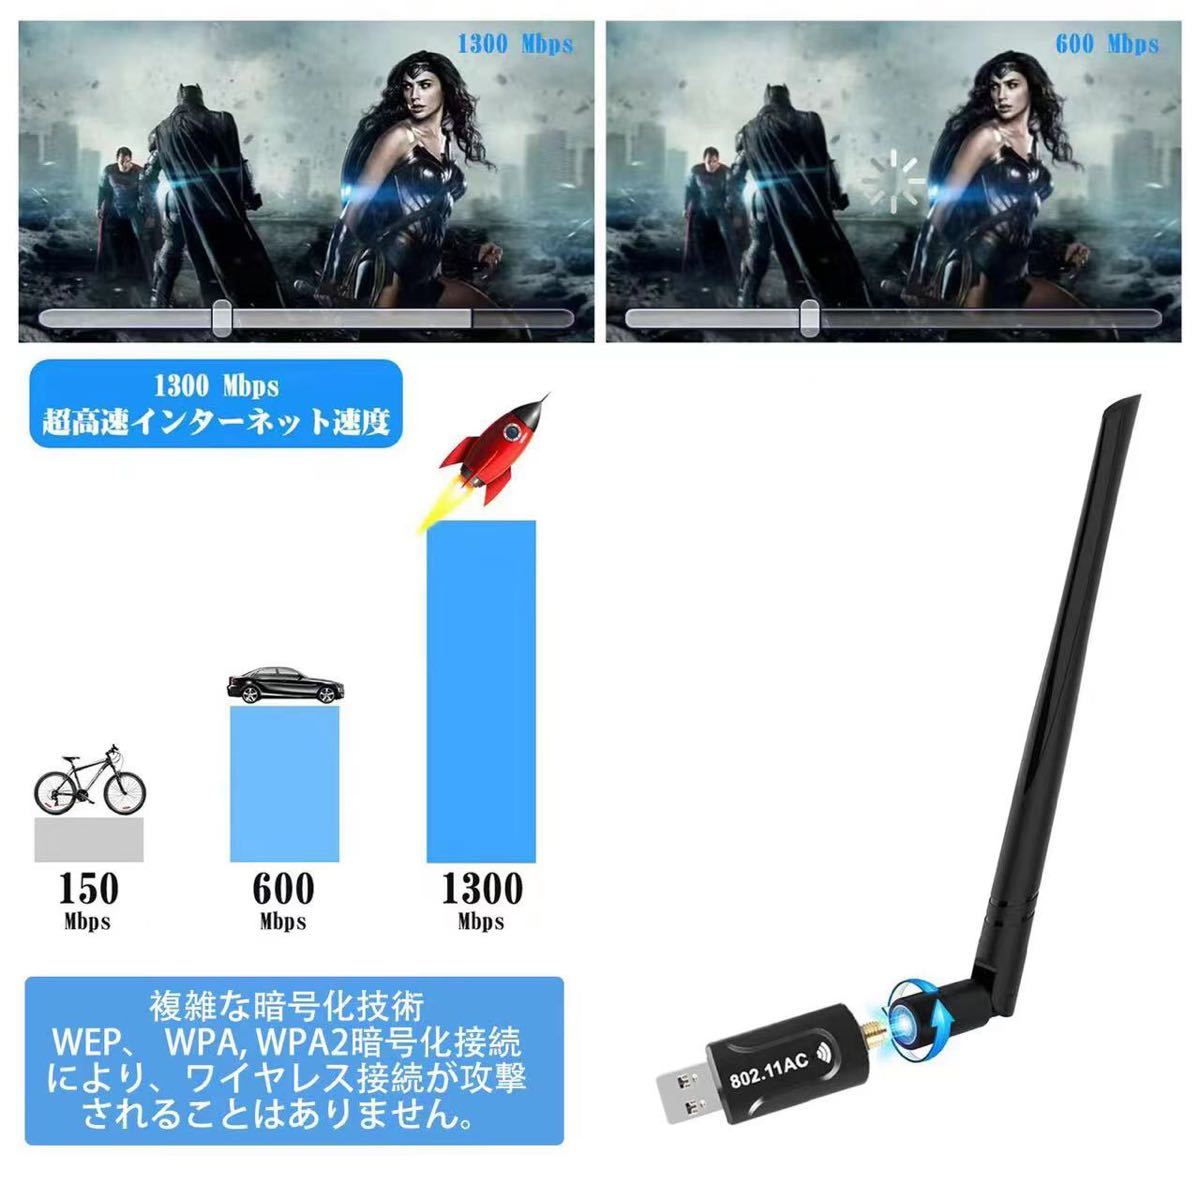 【2022新版】WiFi 無線LAN 子機 1300Mbps USB3.0 WIFIアダプター 5.8G/2.4Gデュアルバンド5dBi高速通信13個放熱穴